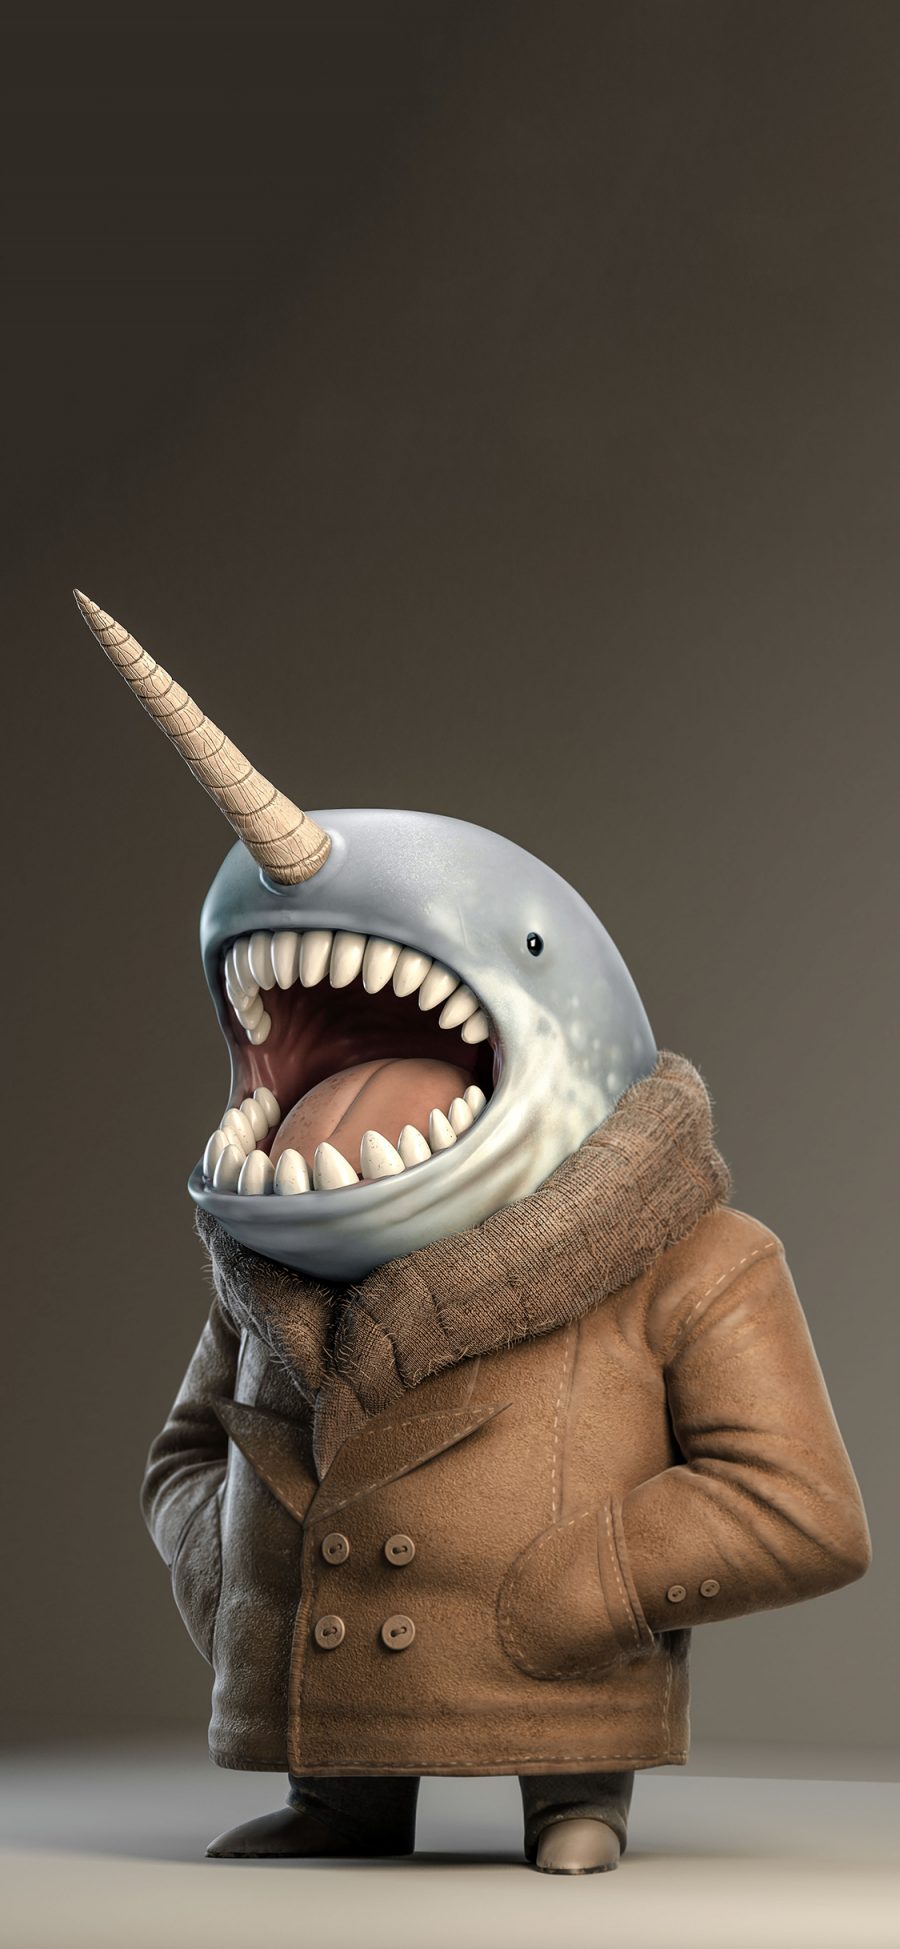 [2436×1125]纯色背景 3D鲨鱼 模型 苹果手机动漫壁纸图片